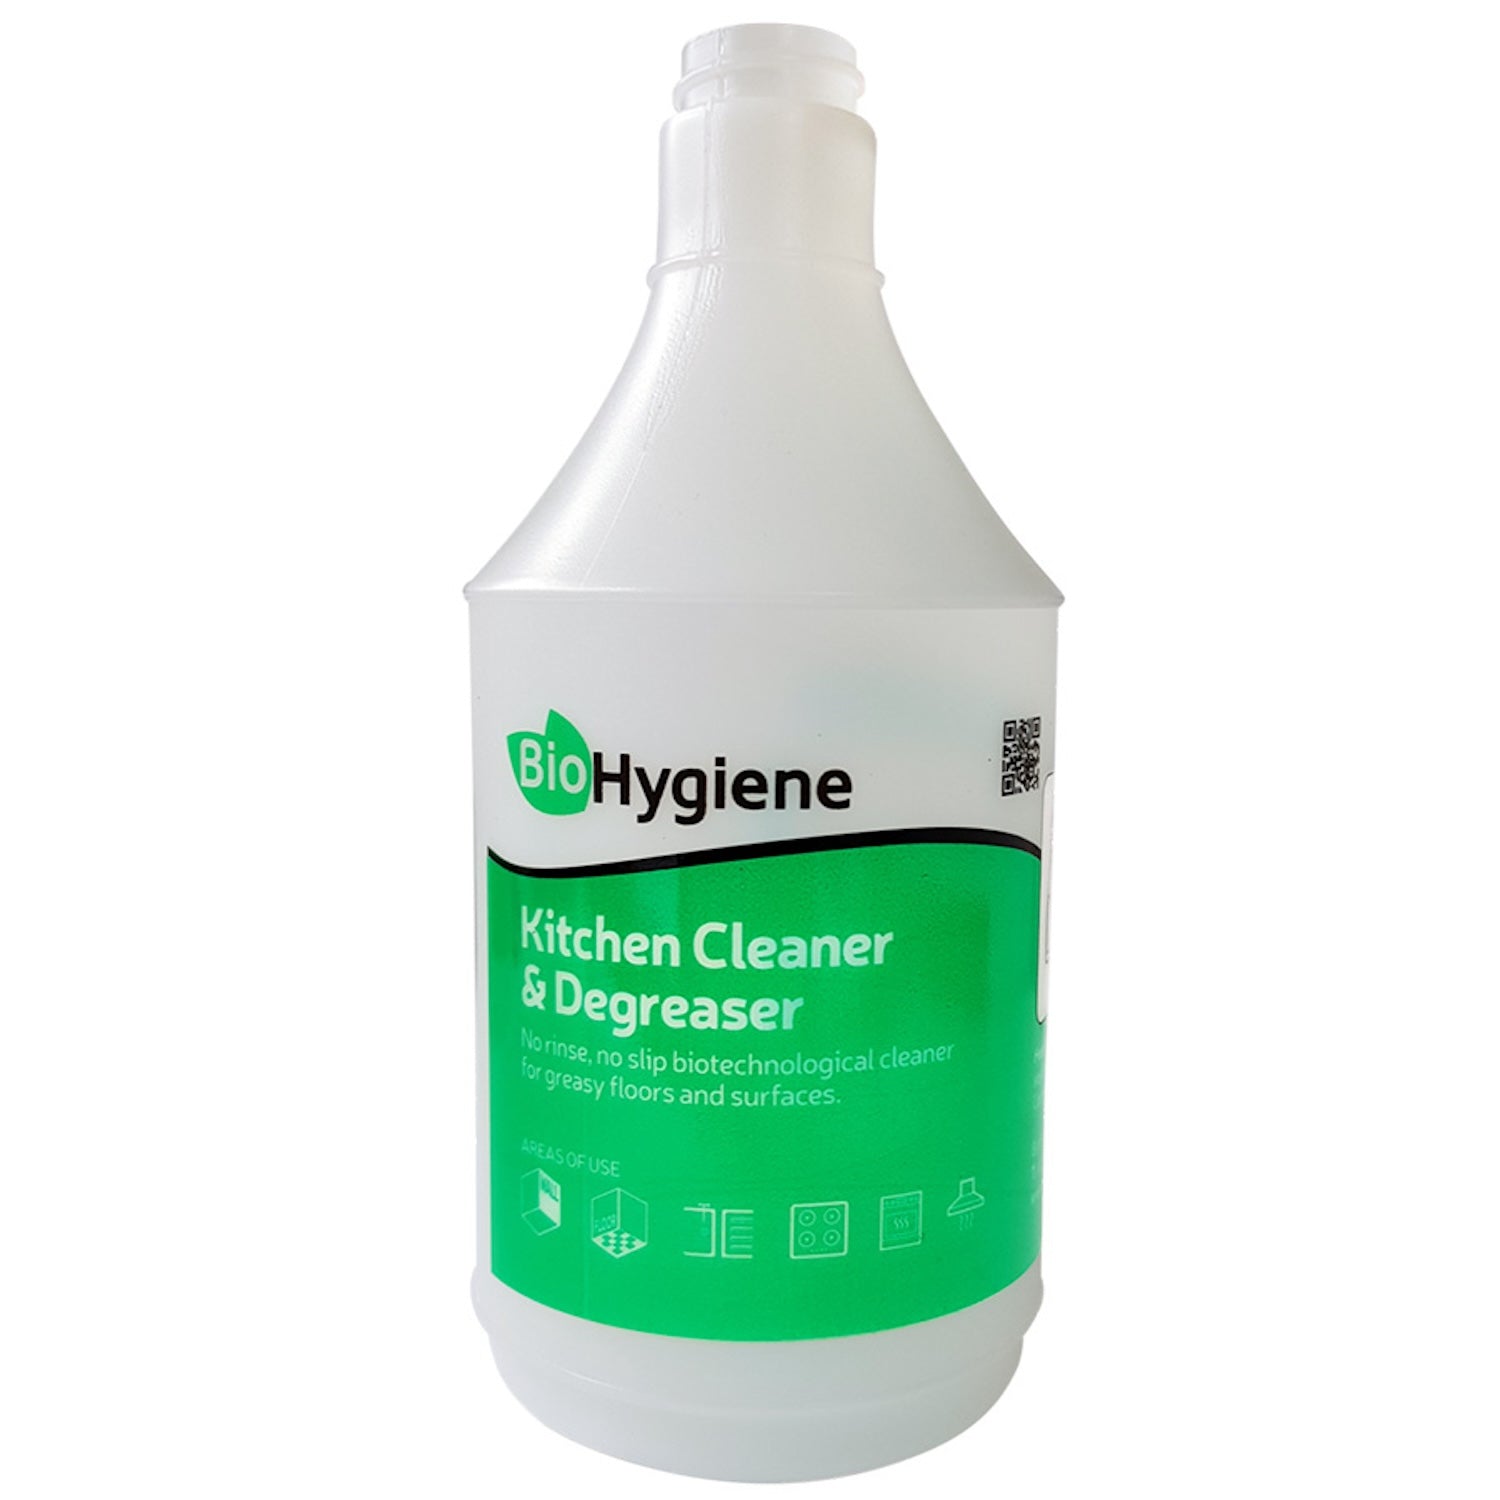 BH Kitchen Cleaner & Degreaser Screen Bottle / White Trigger | 750ml | Single